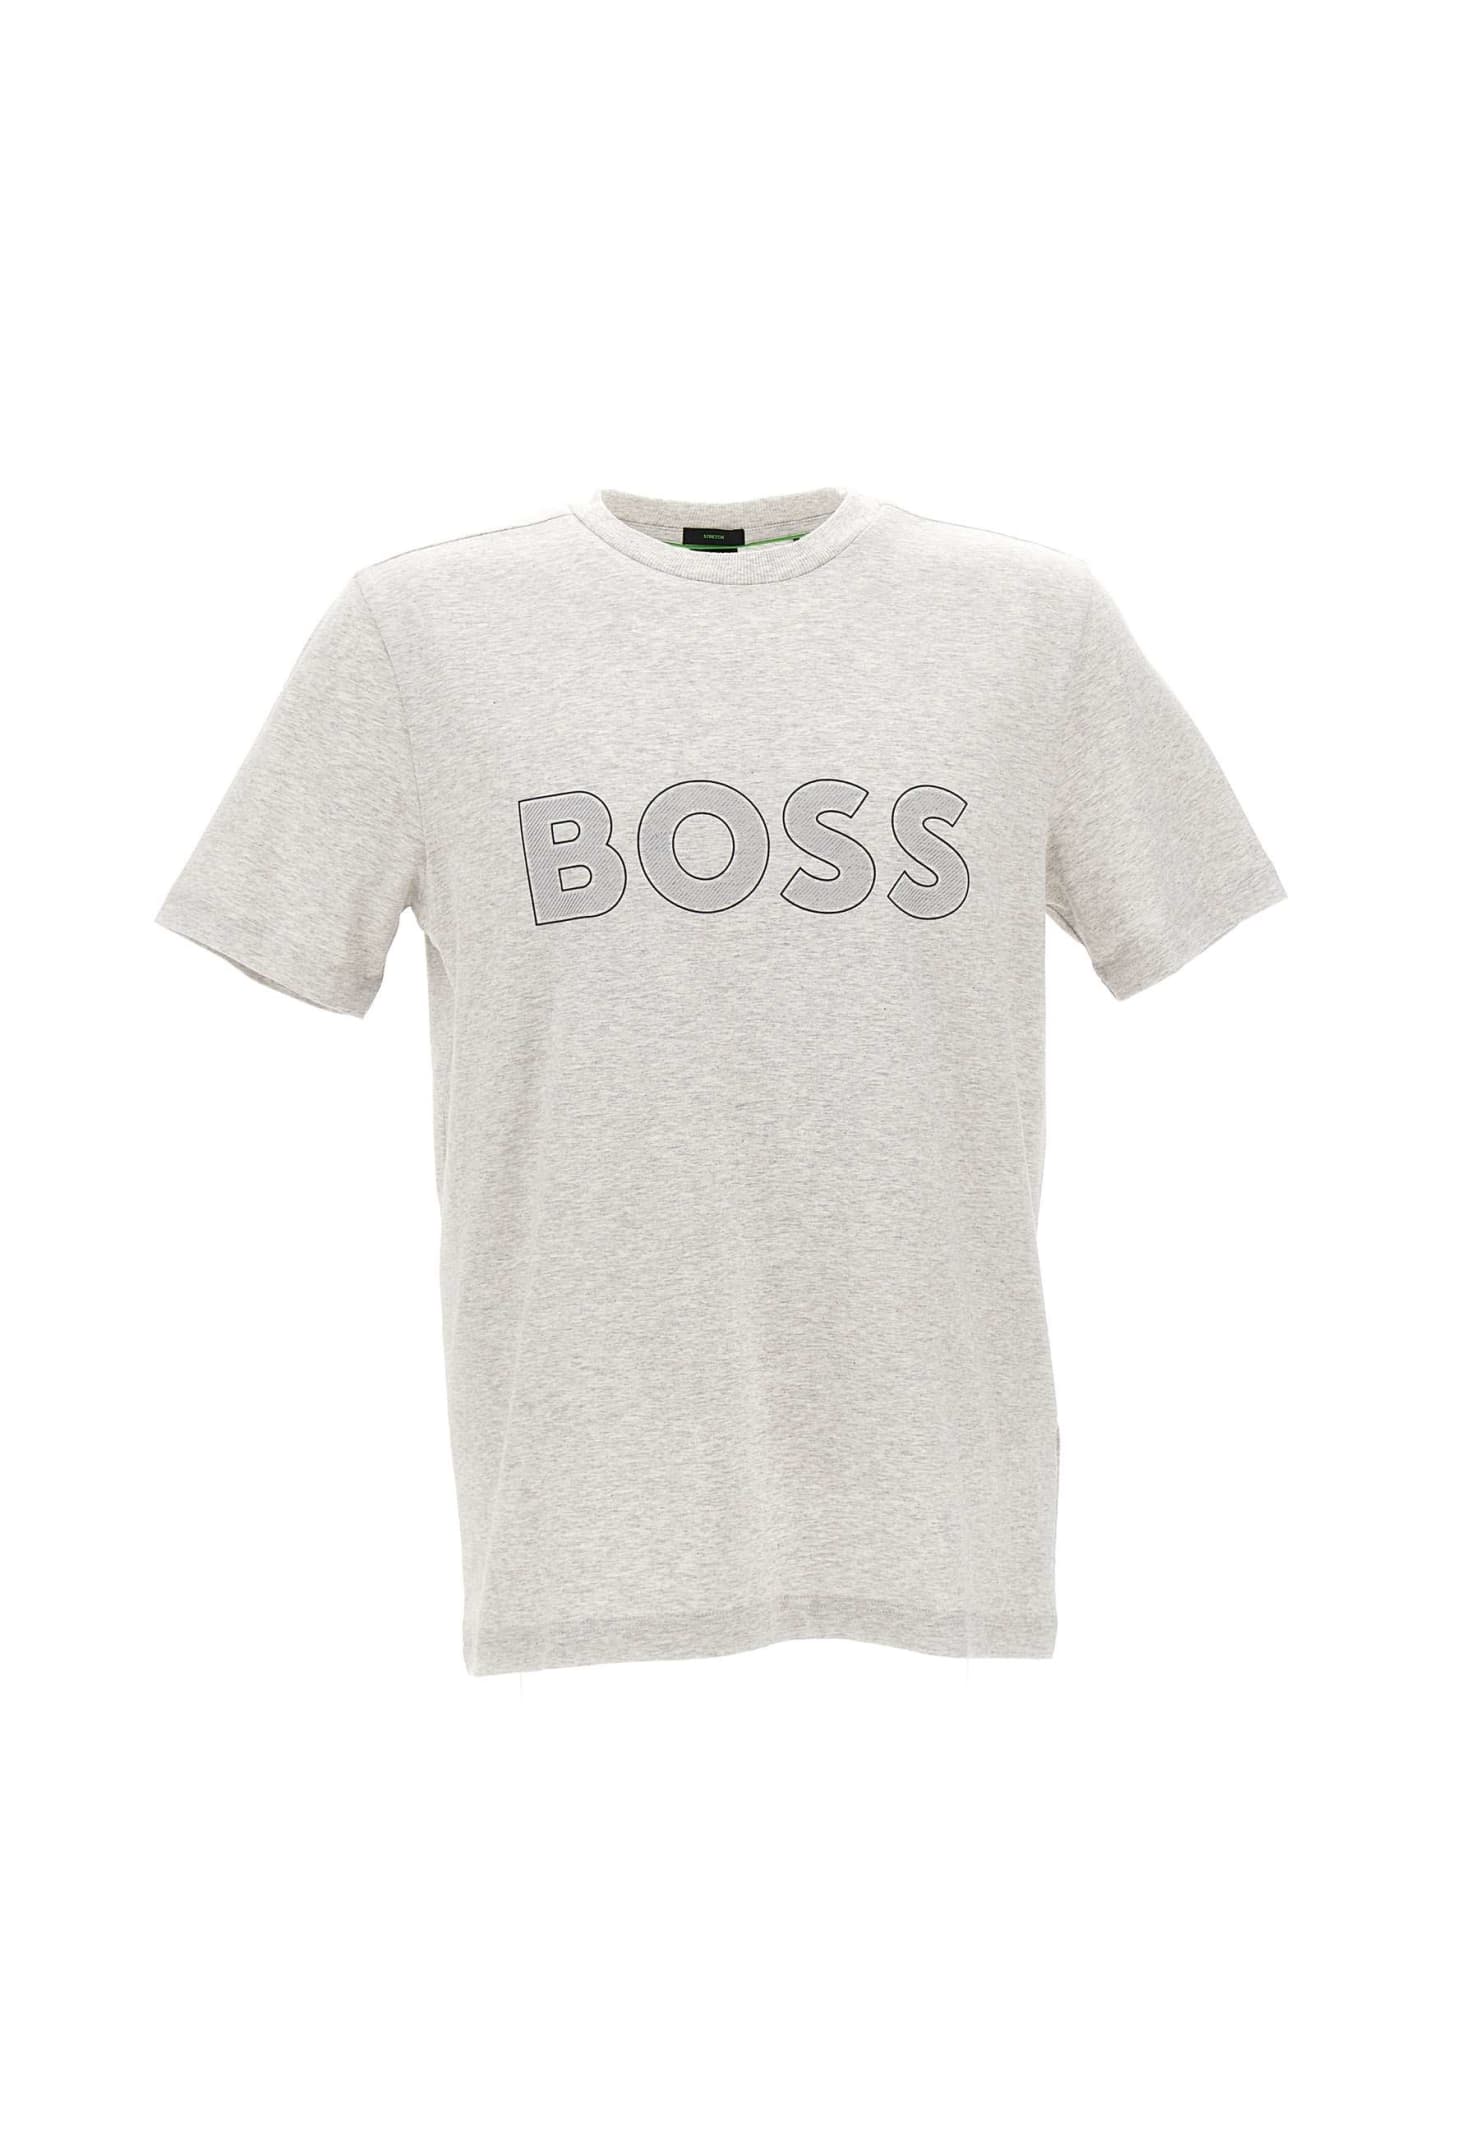 Hugo Boss Boss tee9 Cotton T-shirt